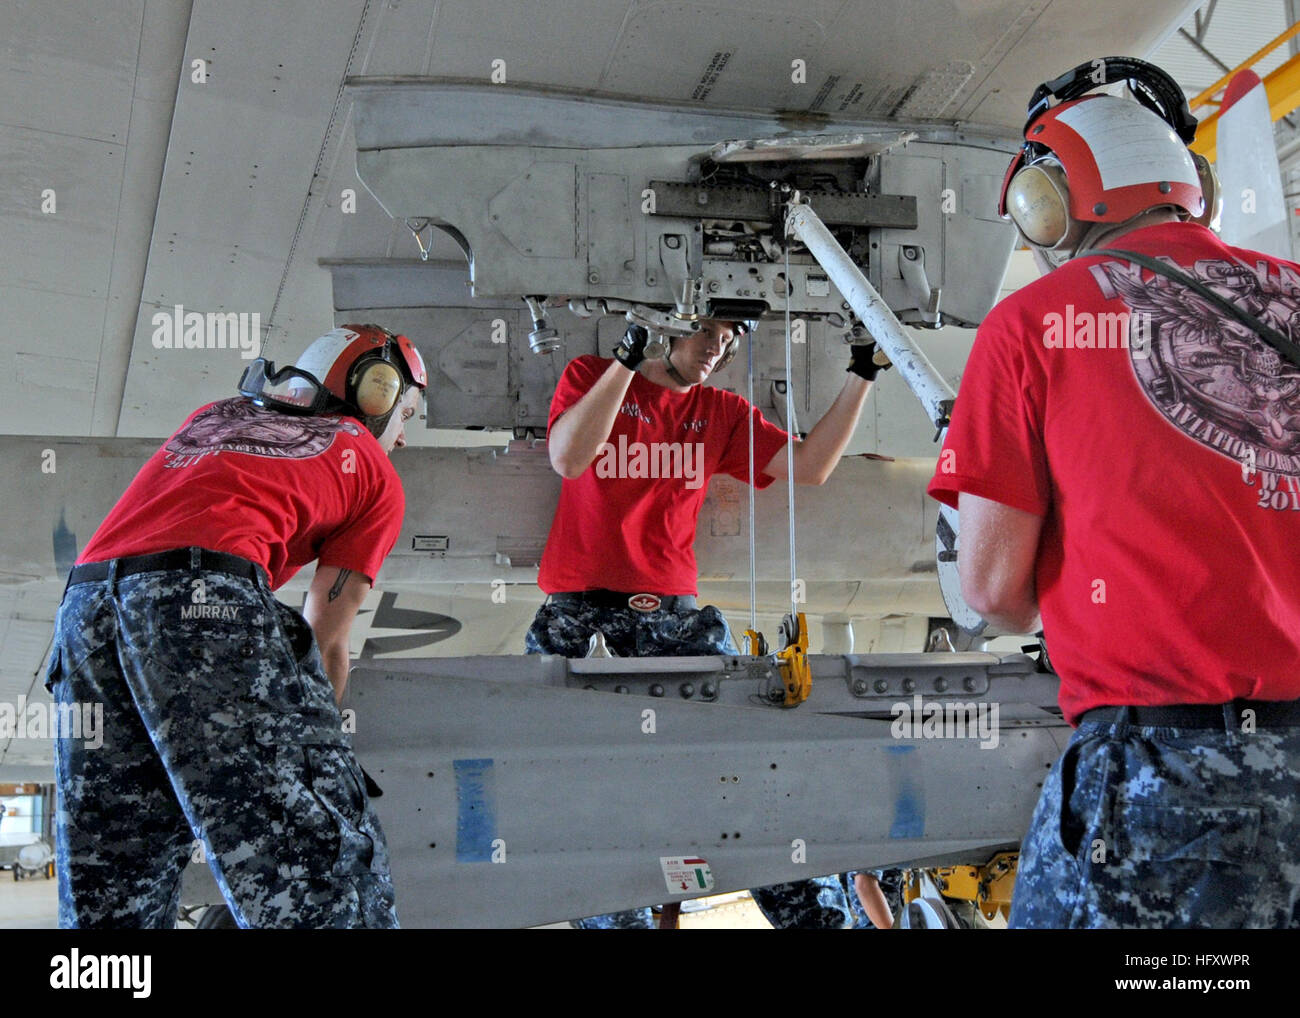 110720-N-pp197-013 La baie de Kaneohe, Hawaii (20 juillet 2011) l'Aviation Ordnancemen affectés à l'Escadron de patrouille (VP) 47 ascenseur une AGA-65 Maverick air-sol, d'un missile tactique P-3C Orion au cours de l'Escadron de patrouille (VP) 47 armes classiques la compétence technique de l'inspection. L'inspection est requise par chaque escadron pour assurer la manutention des munitions est conforme aux procédures. (U.S. Photo par marine Spécialiste de la communication de masse 2e classe Stacy D. Laseter/libérés) US Navy 110720-N-pp197-013 Ordnancemen Aviation affectés à l'Escadron de patrouille (VP) 47 ascenseur une AGA-65 Maverick air-sol, m tactique Banque D'Images